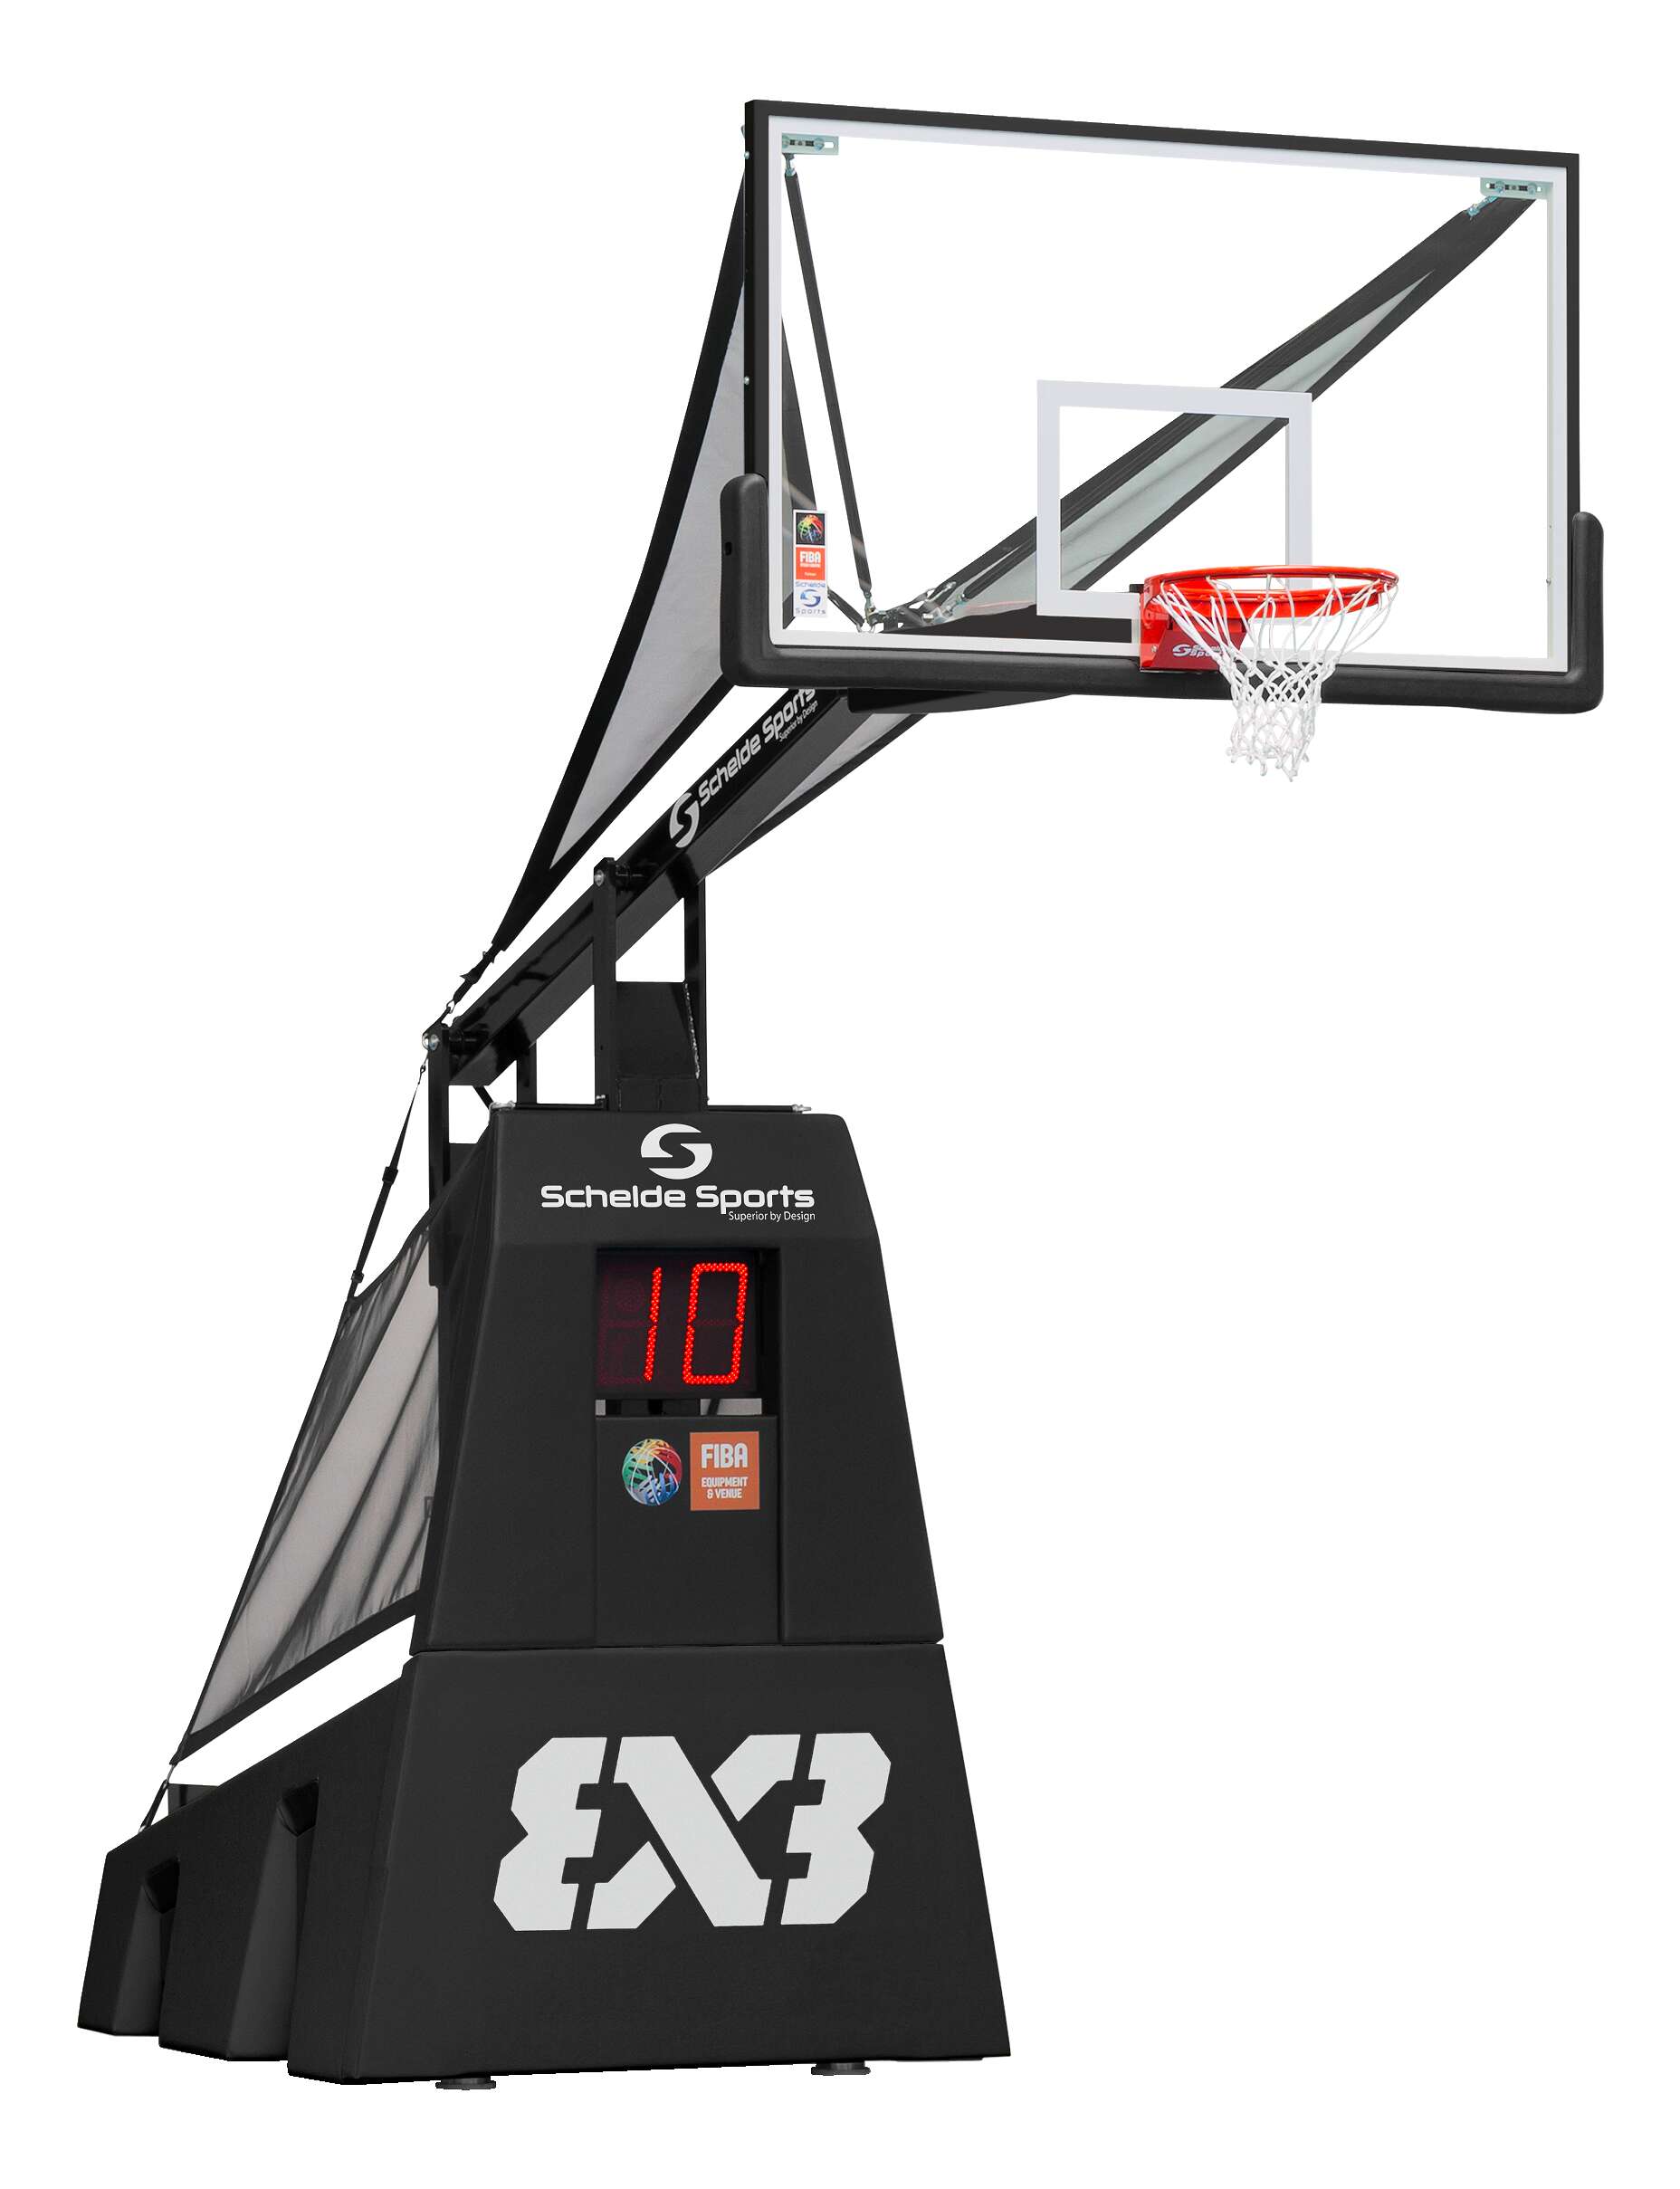 Schelde Basketballanlage "SAM 3x3" von Schelde